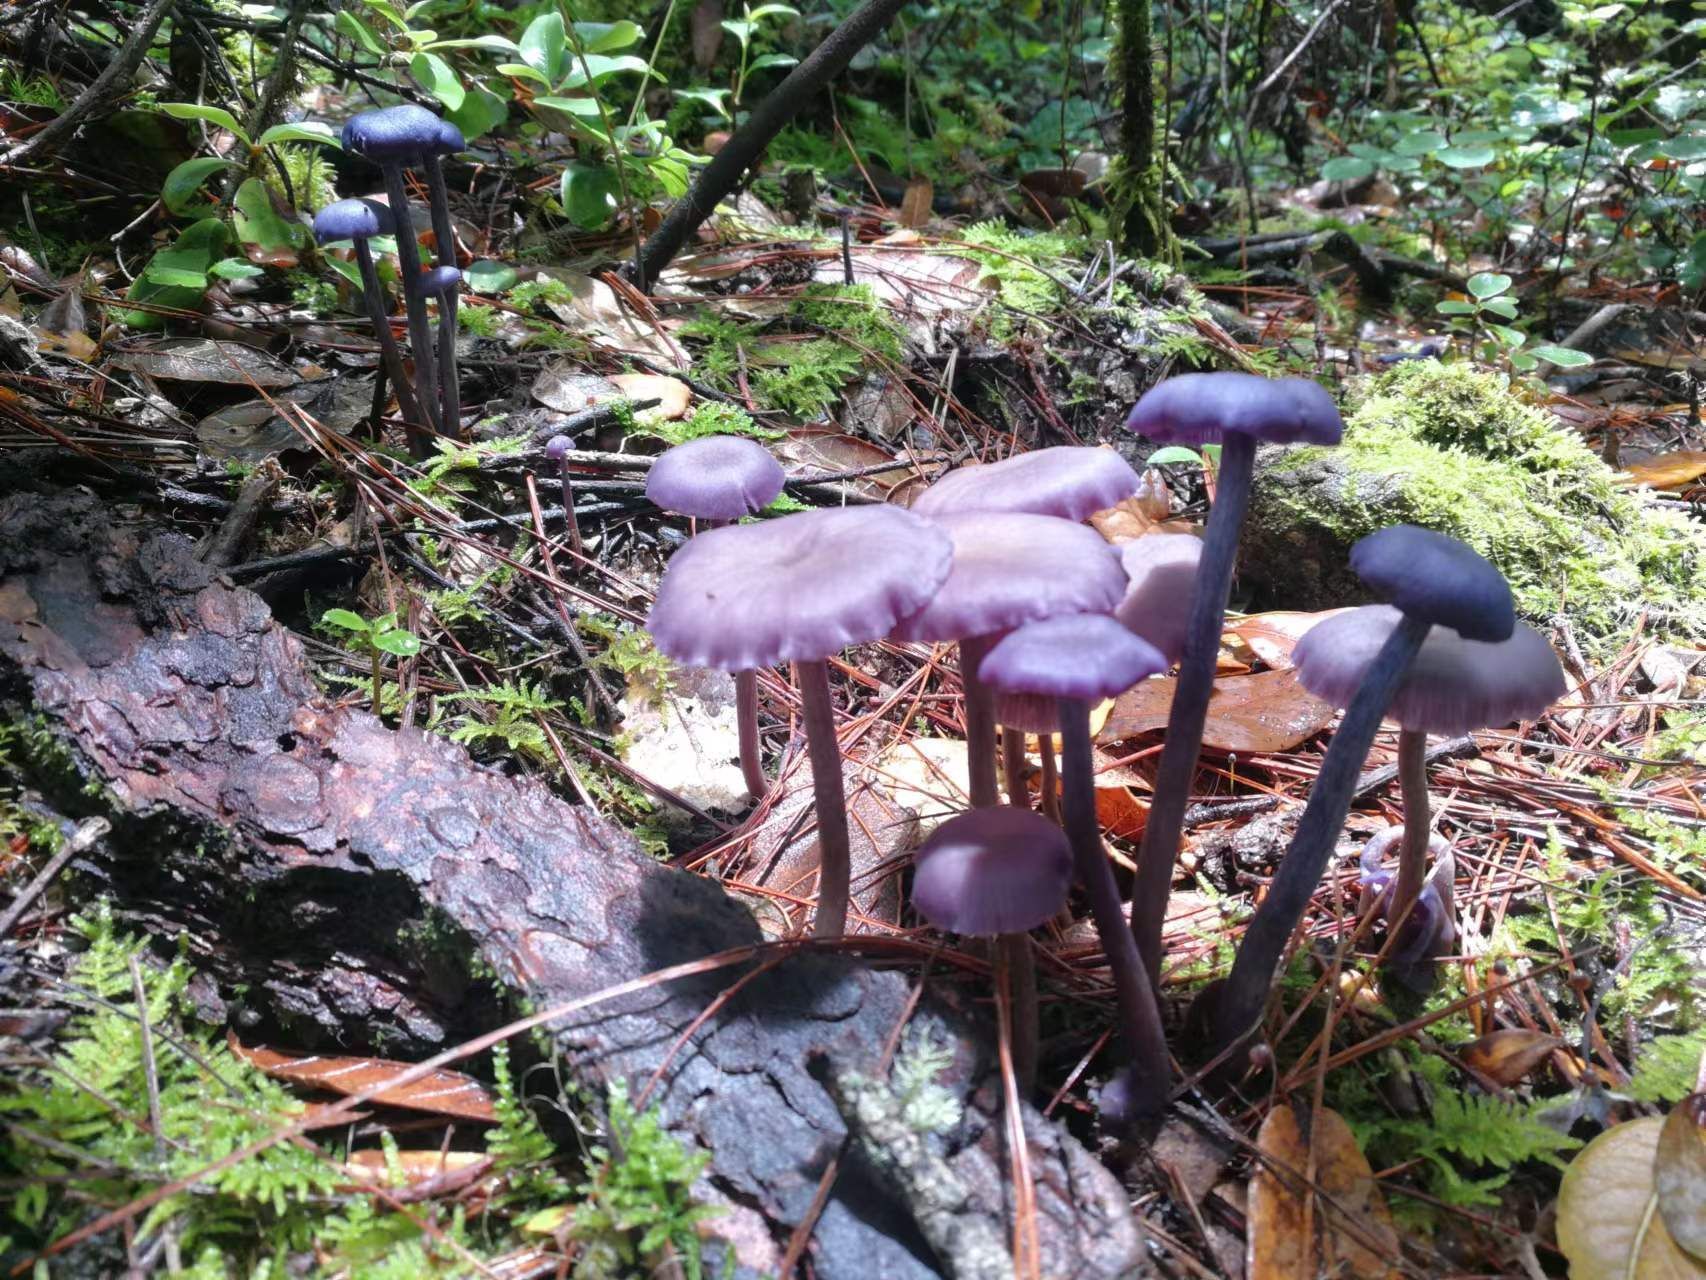 紫蜡蘑为伞菌目,白蘑科,蜡蘑属,又叫紫皮条菌,紫晶蜡蘑